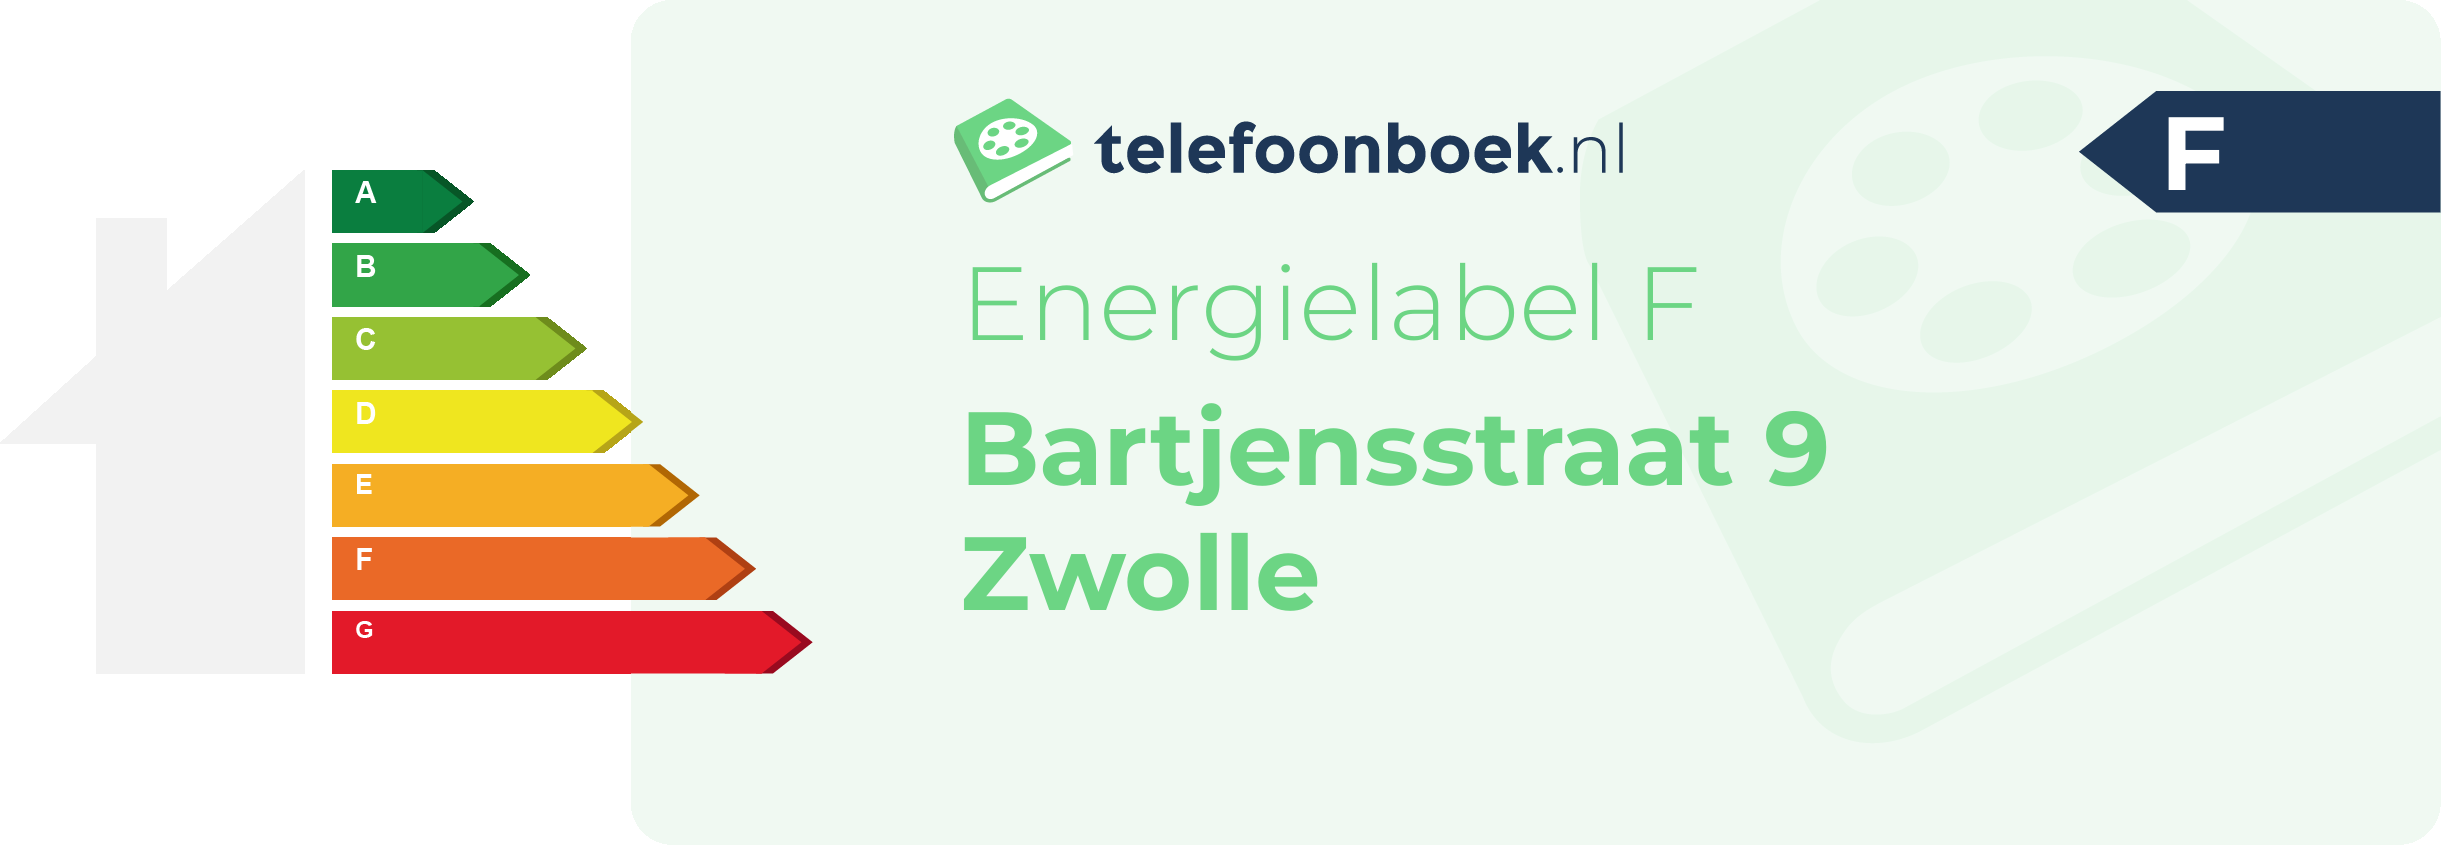 Energielabel Bartjensstraat 9 Zwolle